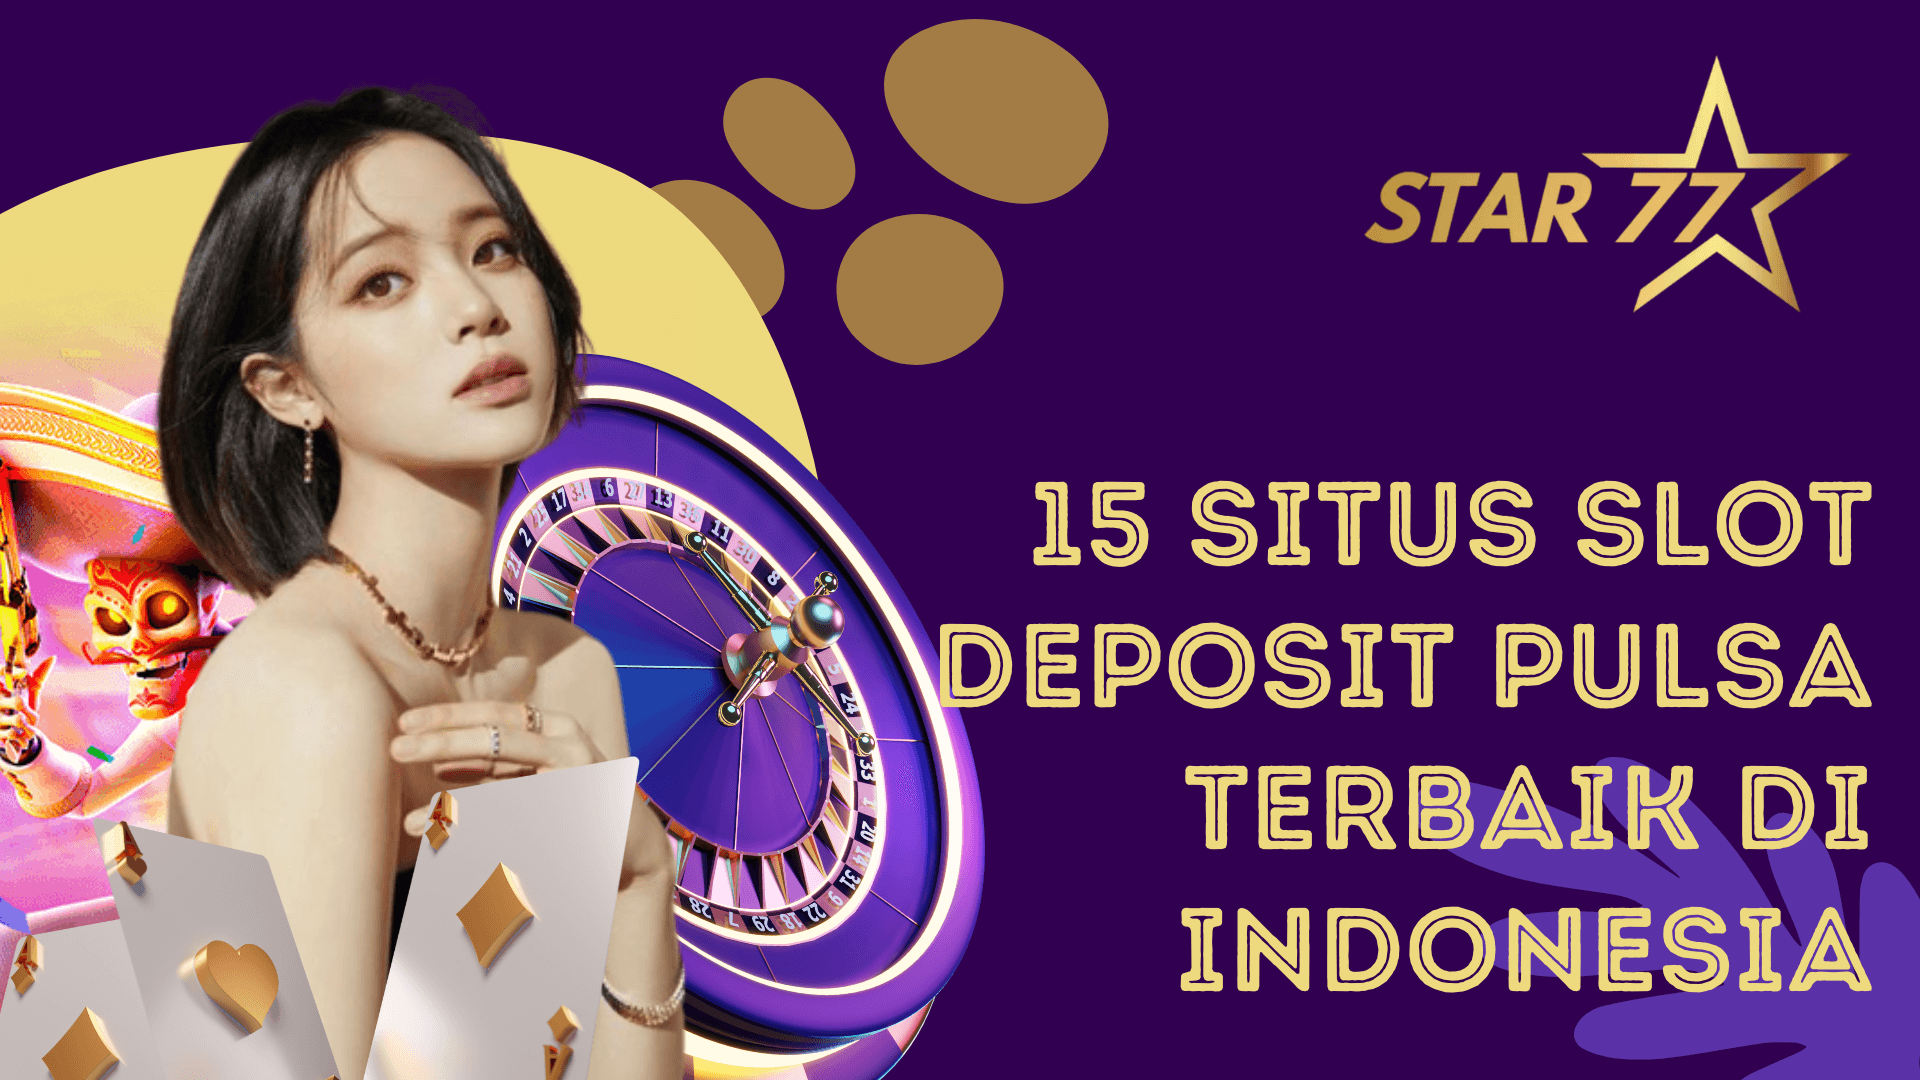 15 situs slot deposit pulsa terbaik di indonesia